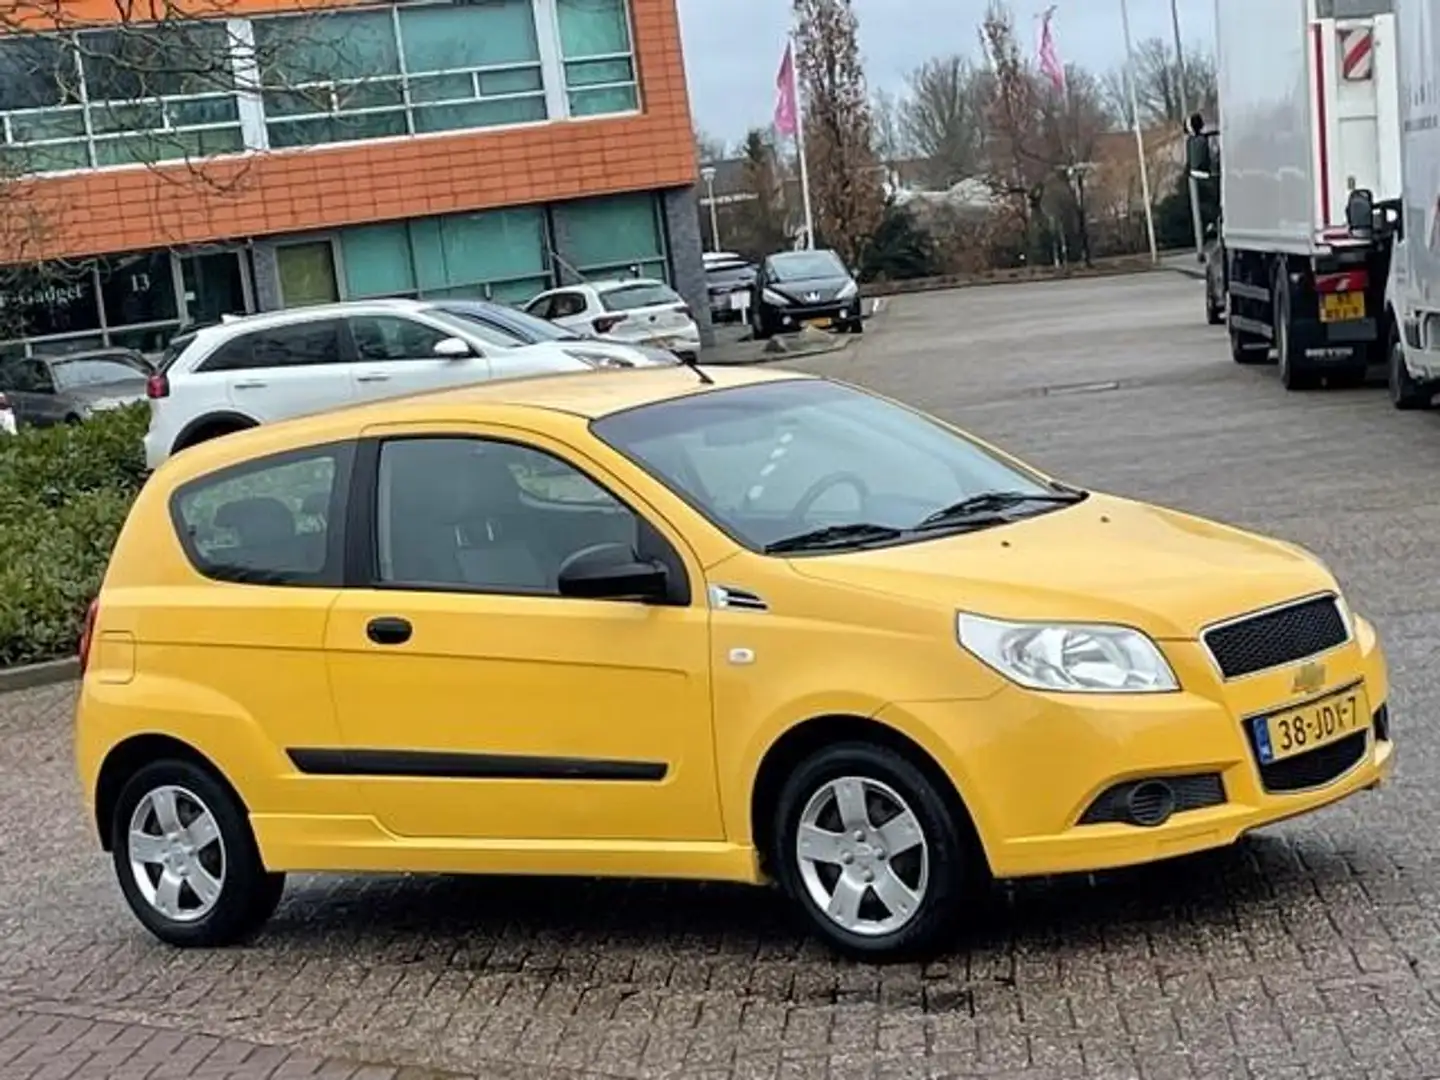 Chevrolet Aveo 1.2 16V L,bj.2009, kleur:geel,APK tot 02/2025 en N Gelb - 2